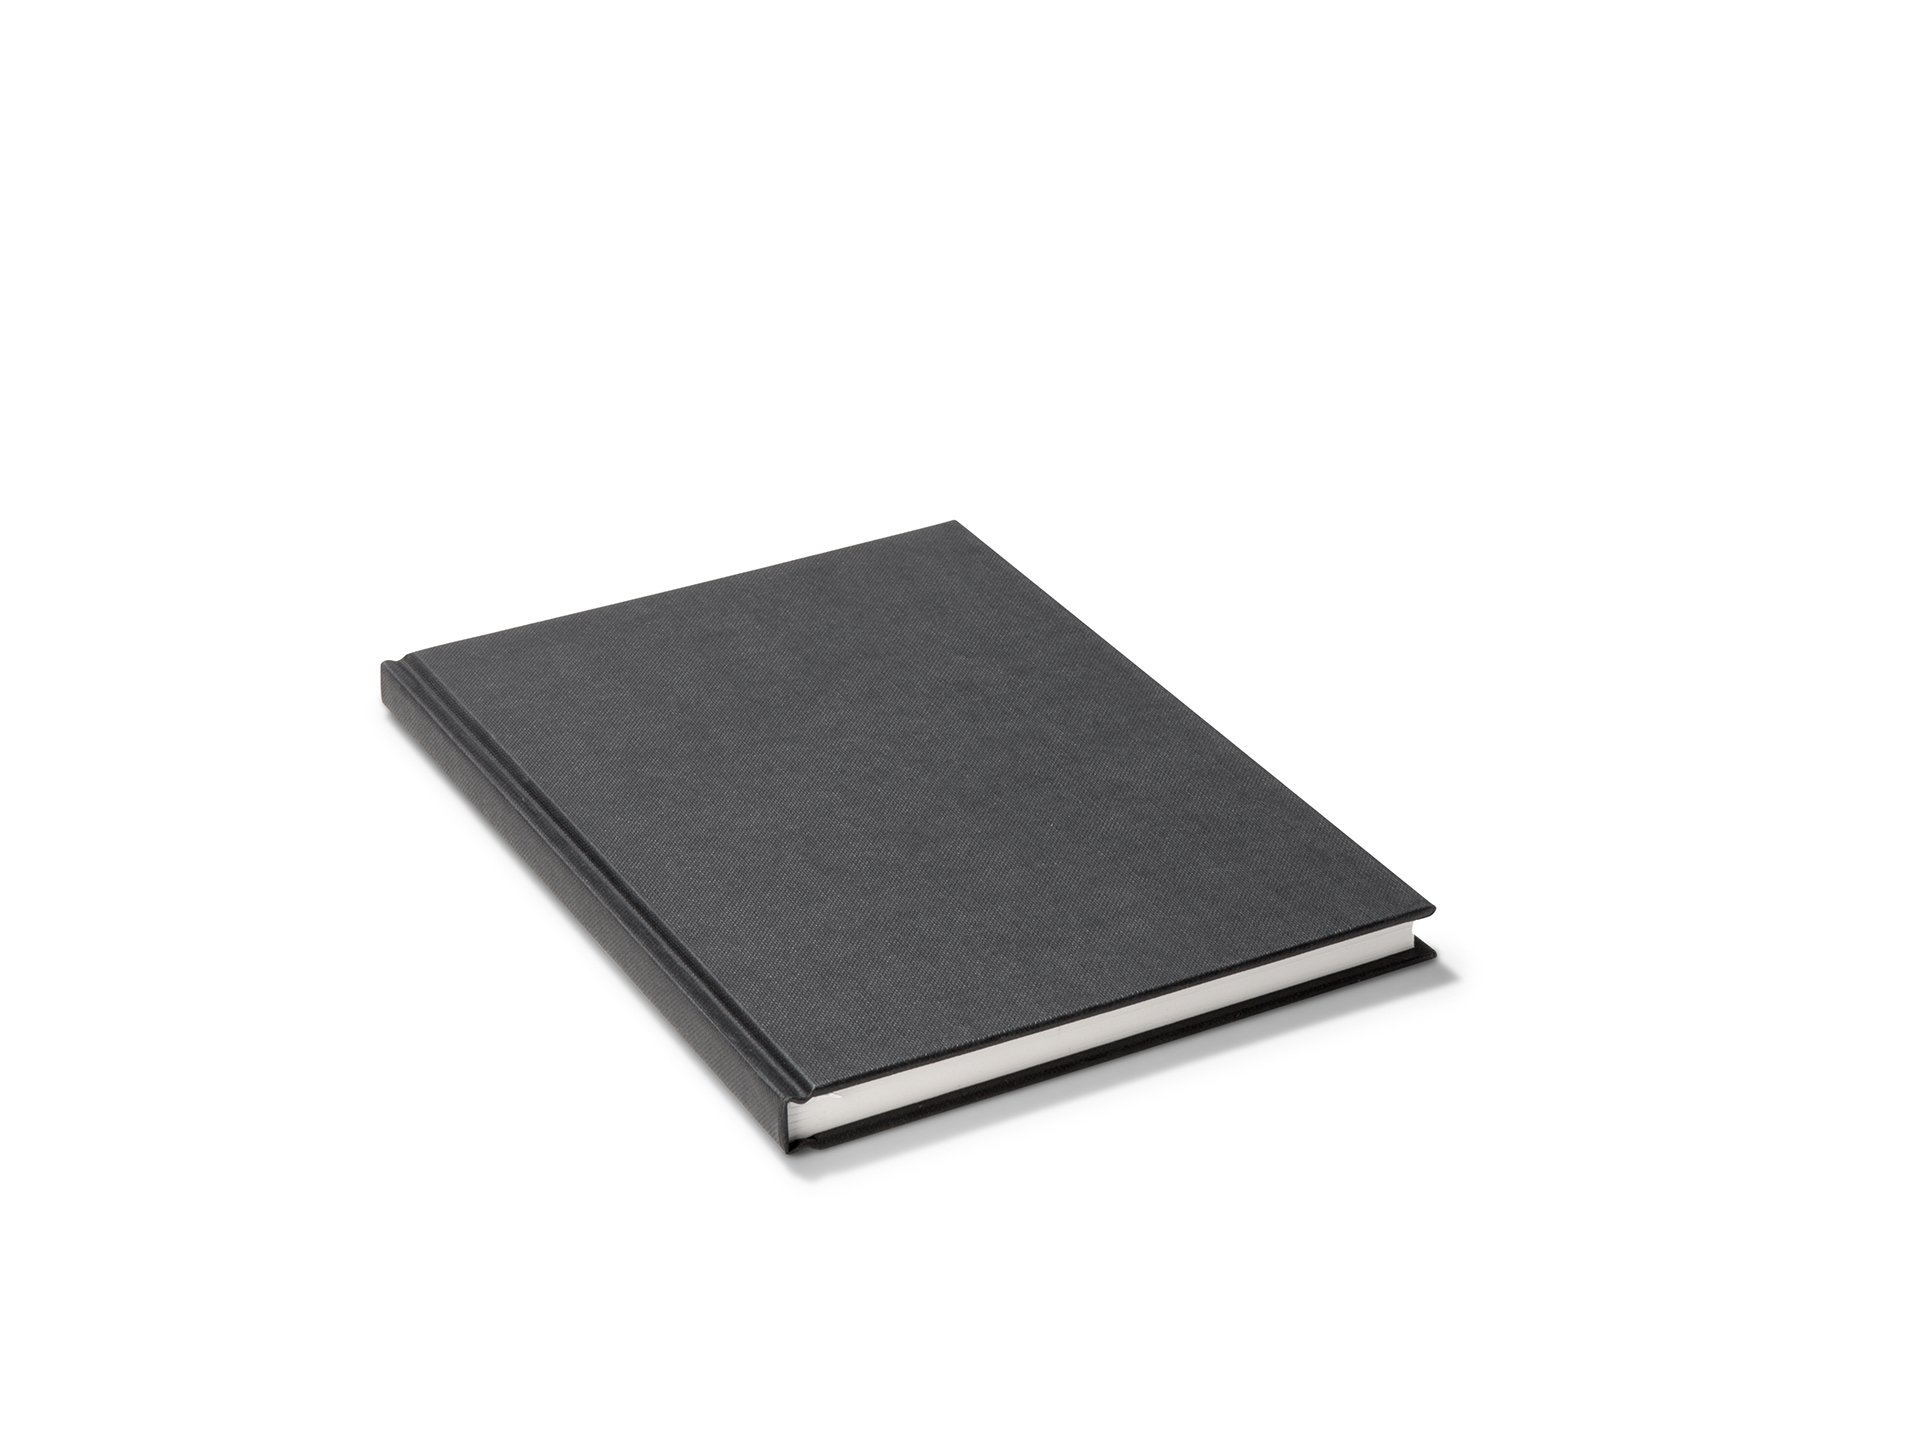 Acquistare Sketchbook bianco mare Panno nero Panno bianco 140 g/m². online